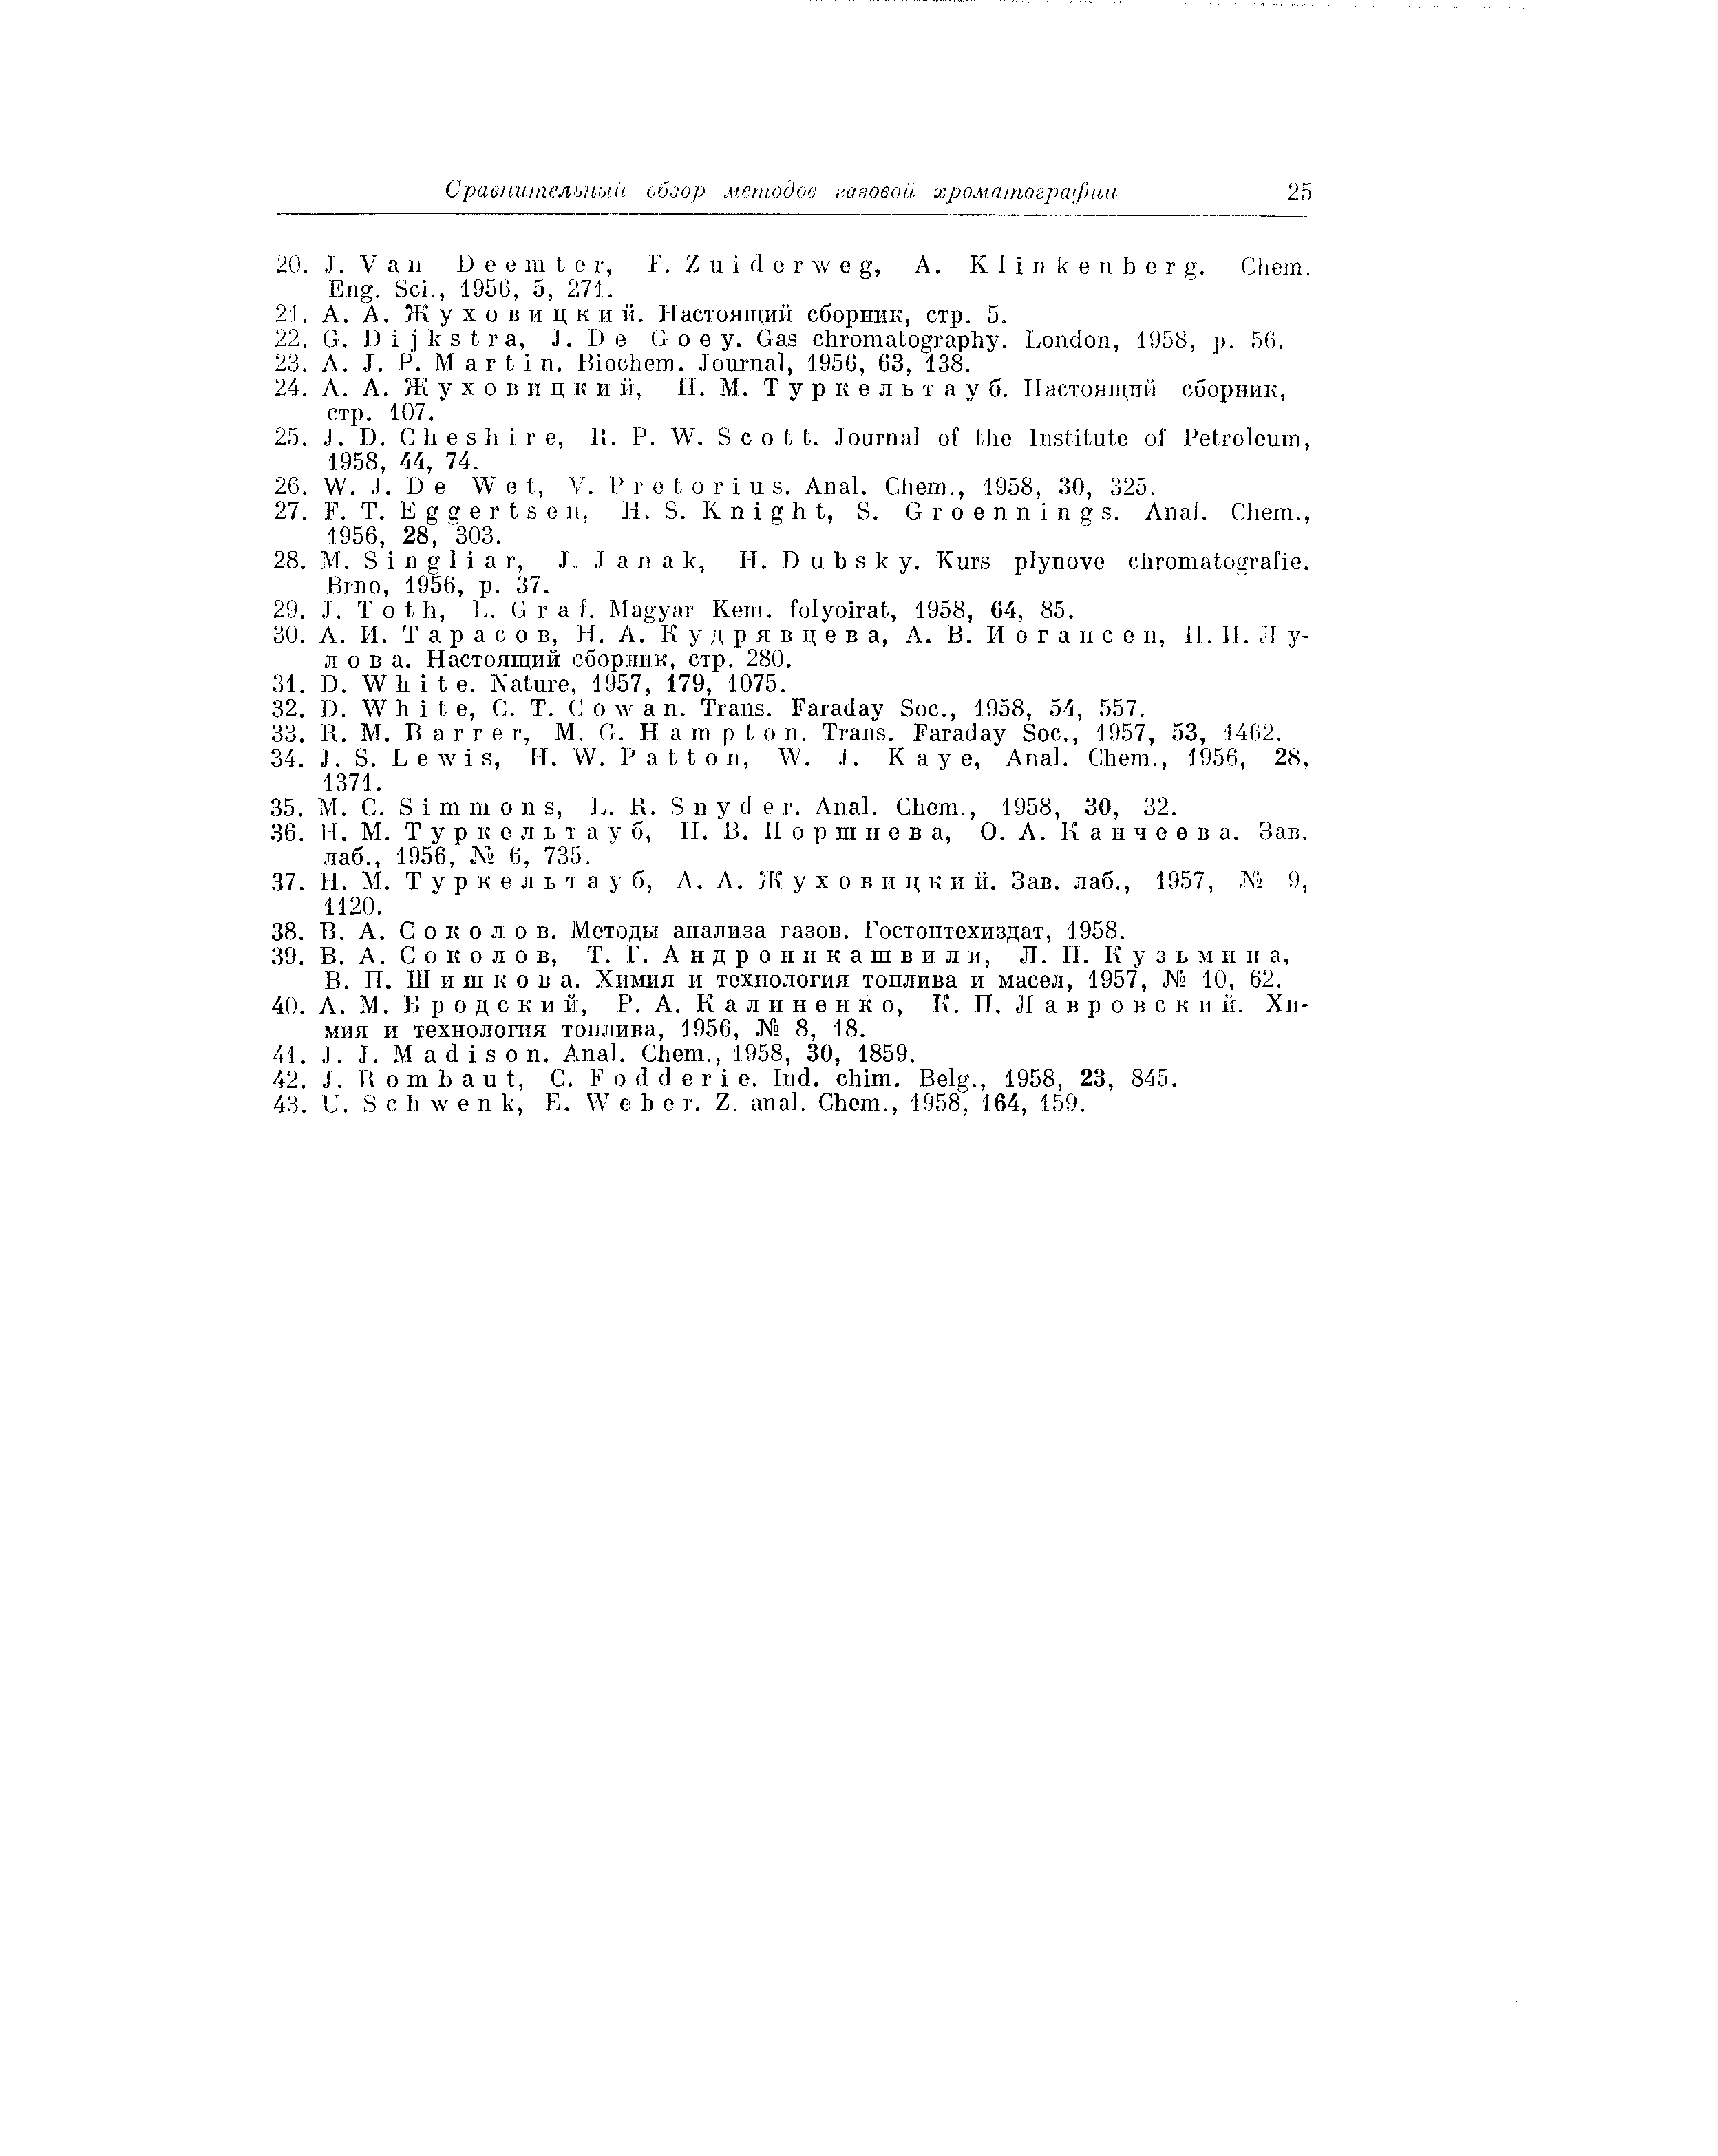 Шишкова. Химия и технология топлива и масел, 1957, 10, 62.